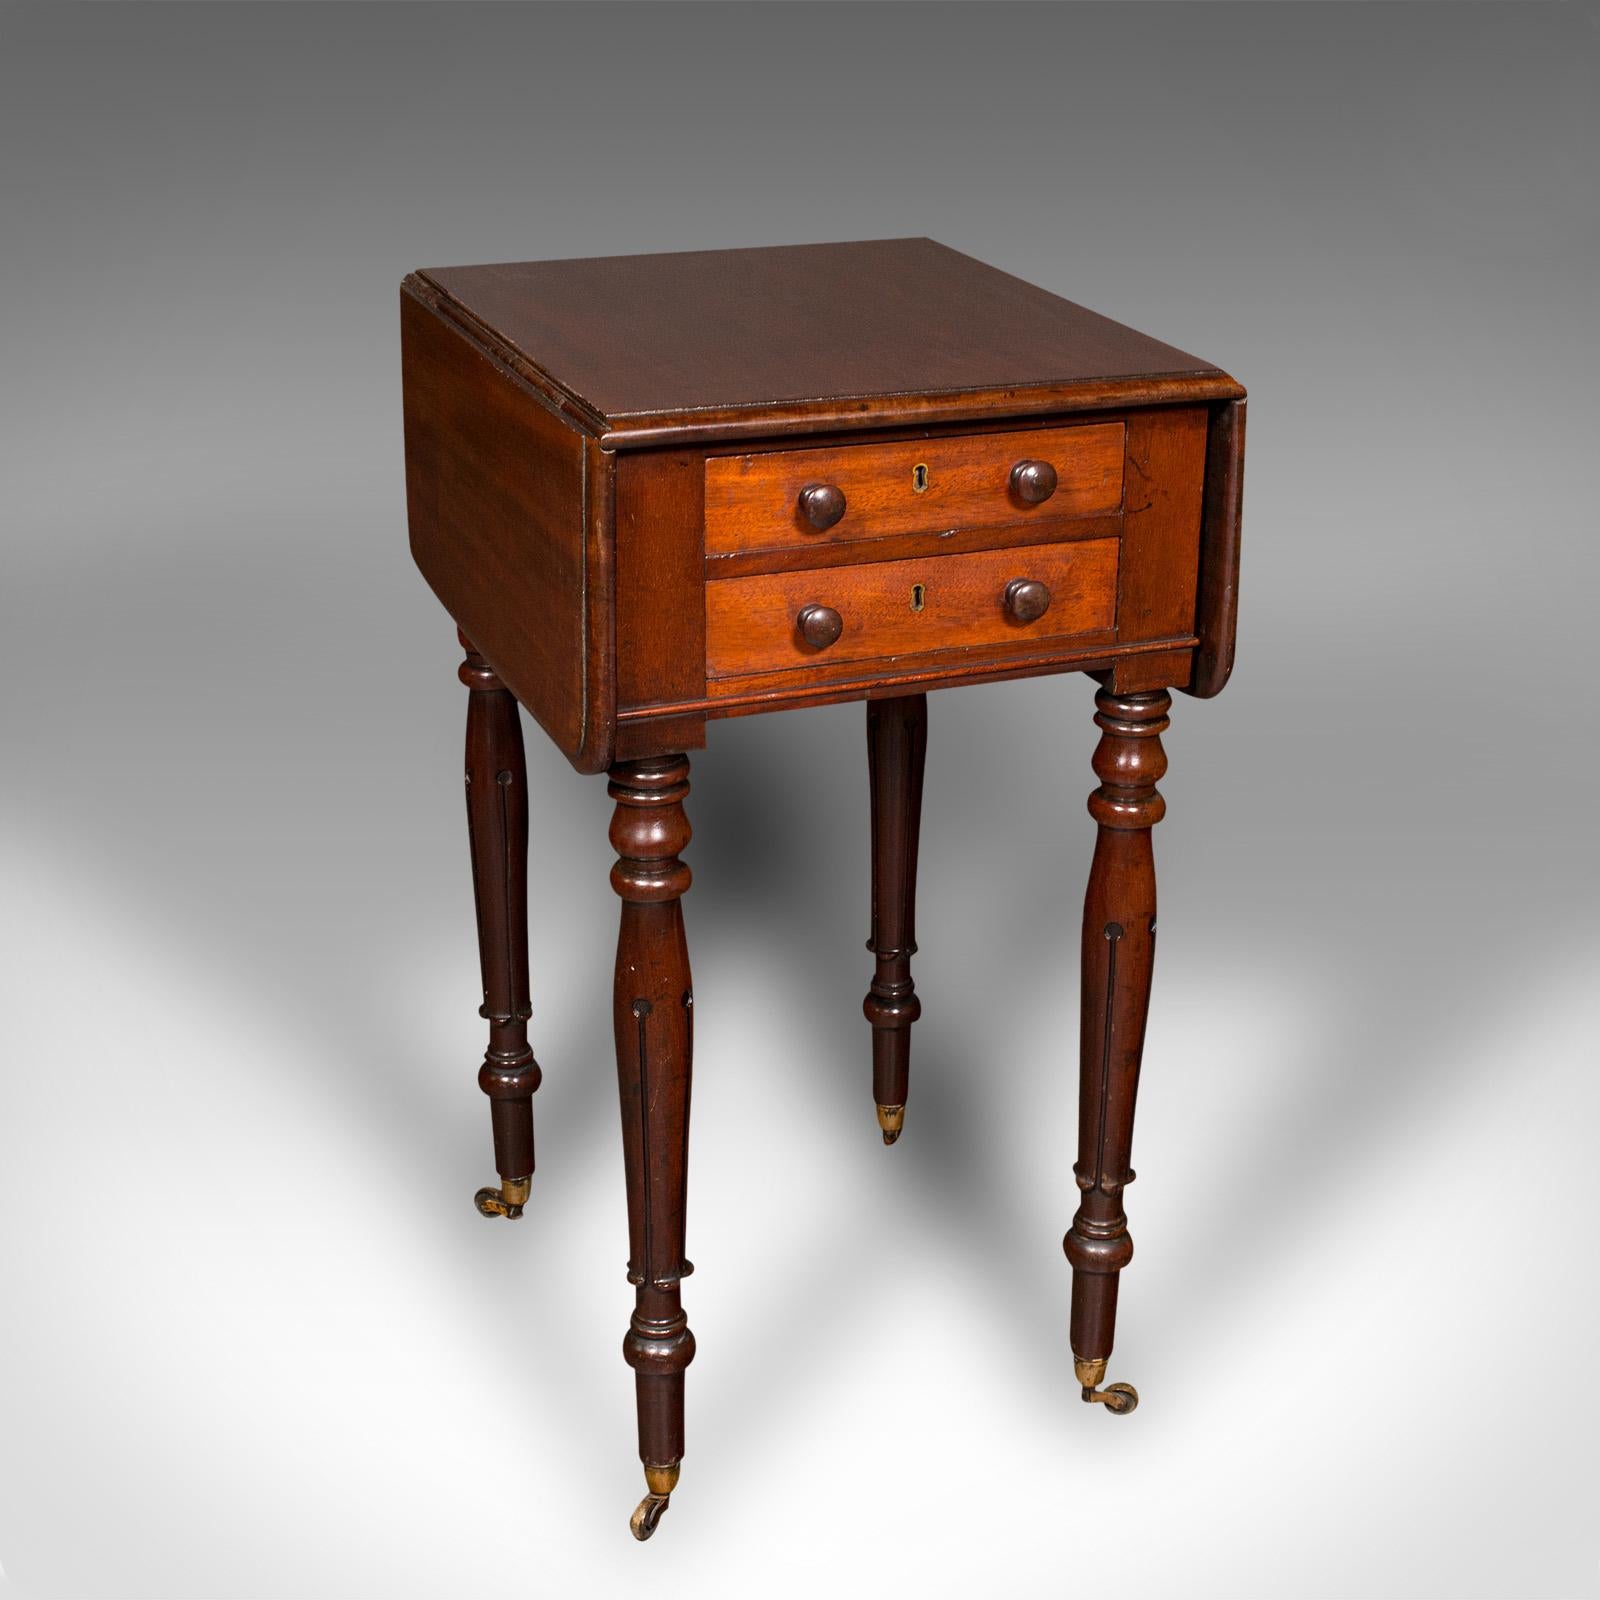 Il s'agit d'une table Pembroke ancienne. Table d'appoint anglaise en acajou, datant de la période Regency, vers 1830.

Charmante table d'appoint aux couleurs et aux formes attrayantes
Présentant une patine d'ancienneté souhaitable et en bon